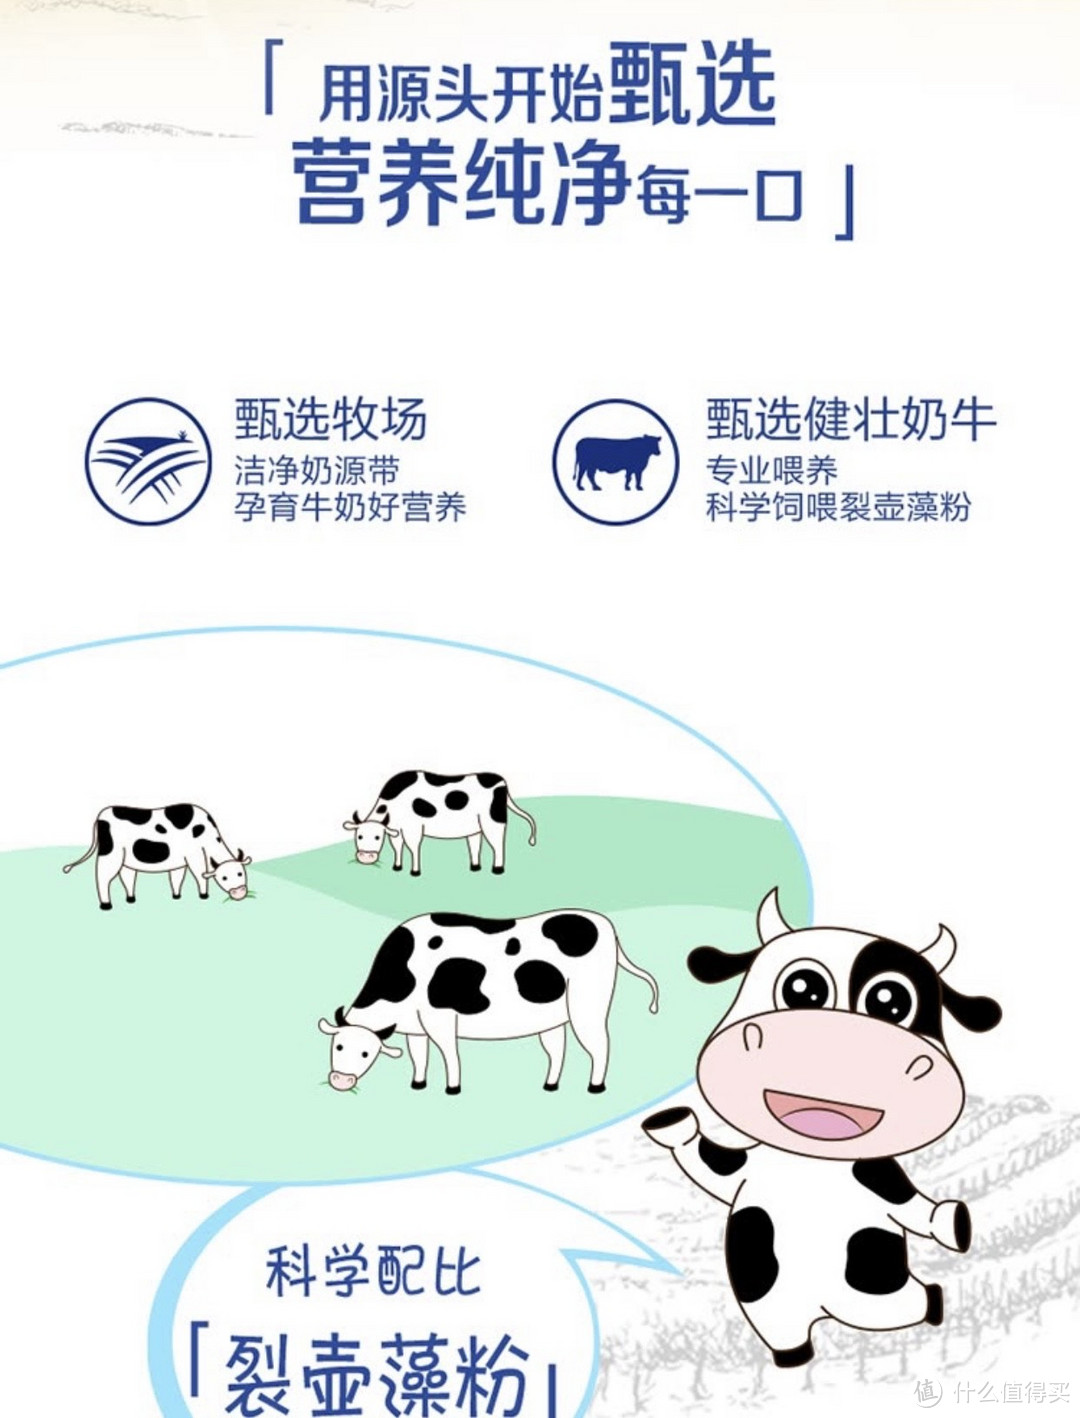 ￼￼蒙牛 未来星 双原生纯牛奶利乐苗条装190ml×12 原生DHA+高钙：营养与创新的完美结合